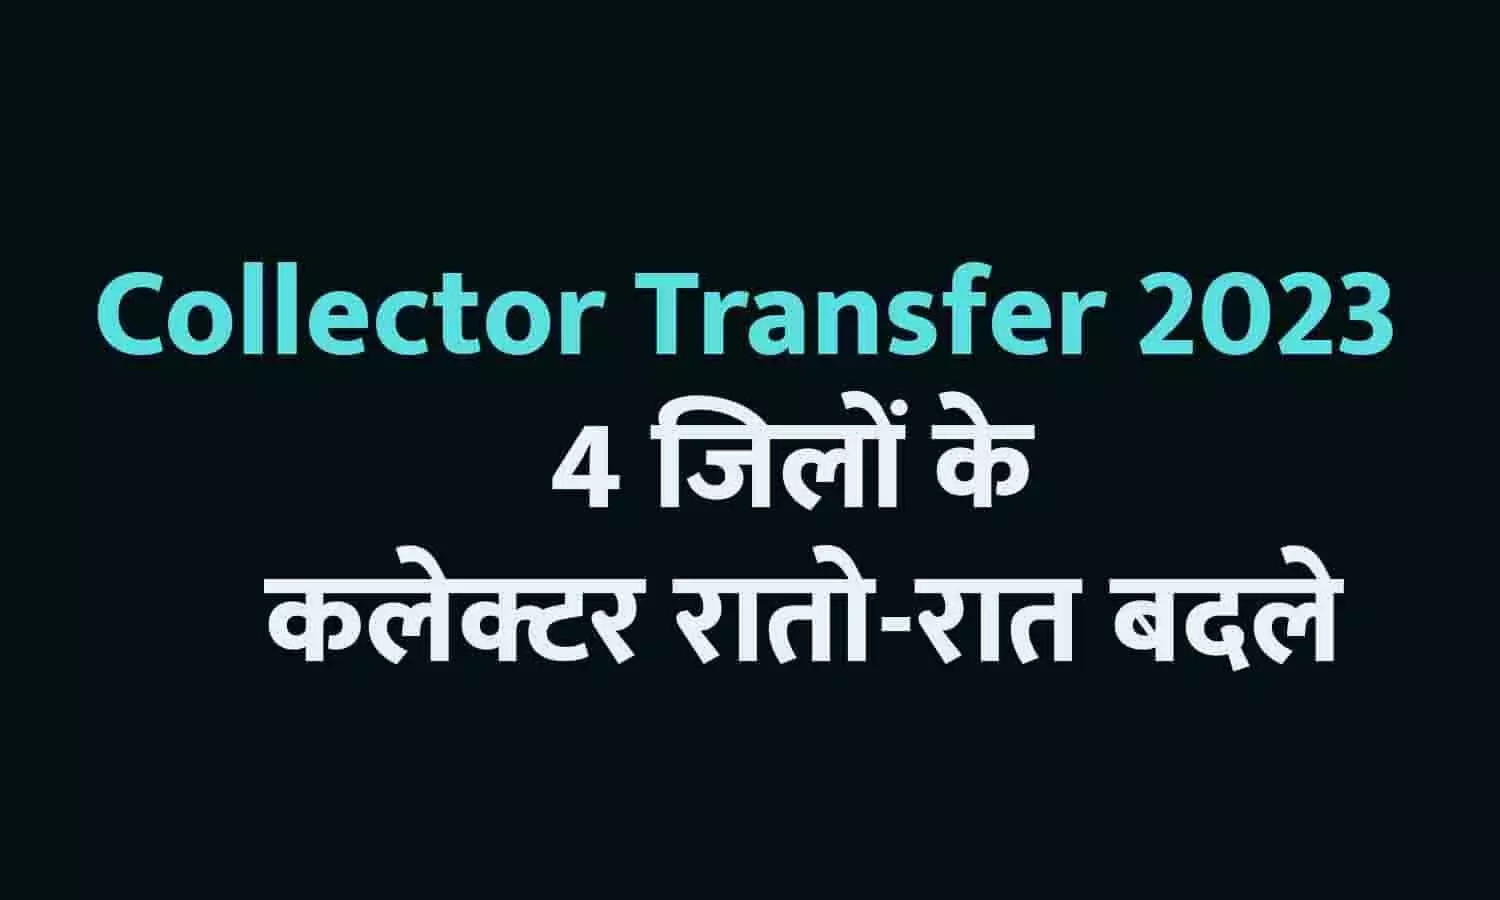 CG Collector Transfer 2023